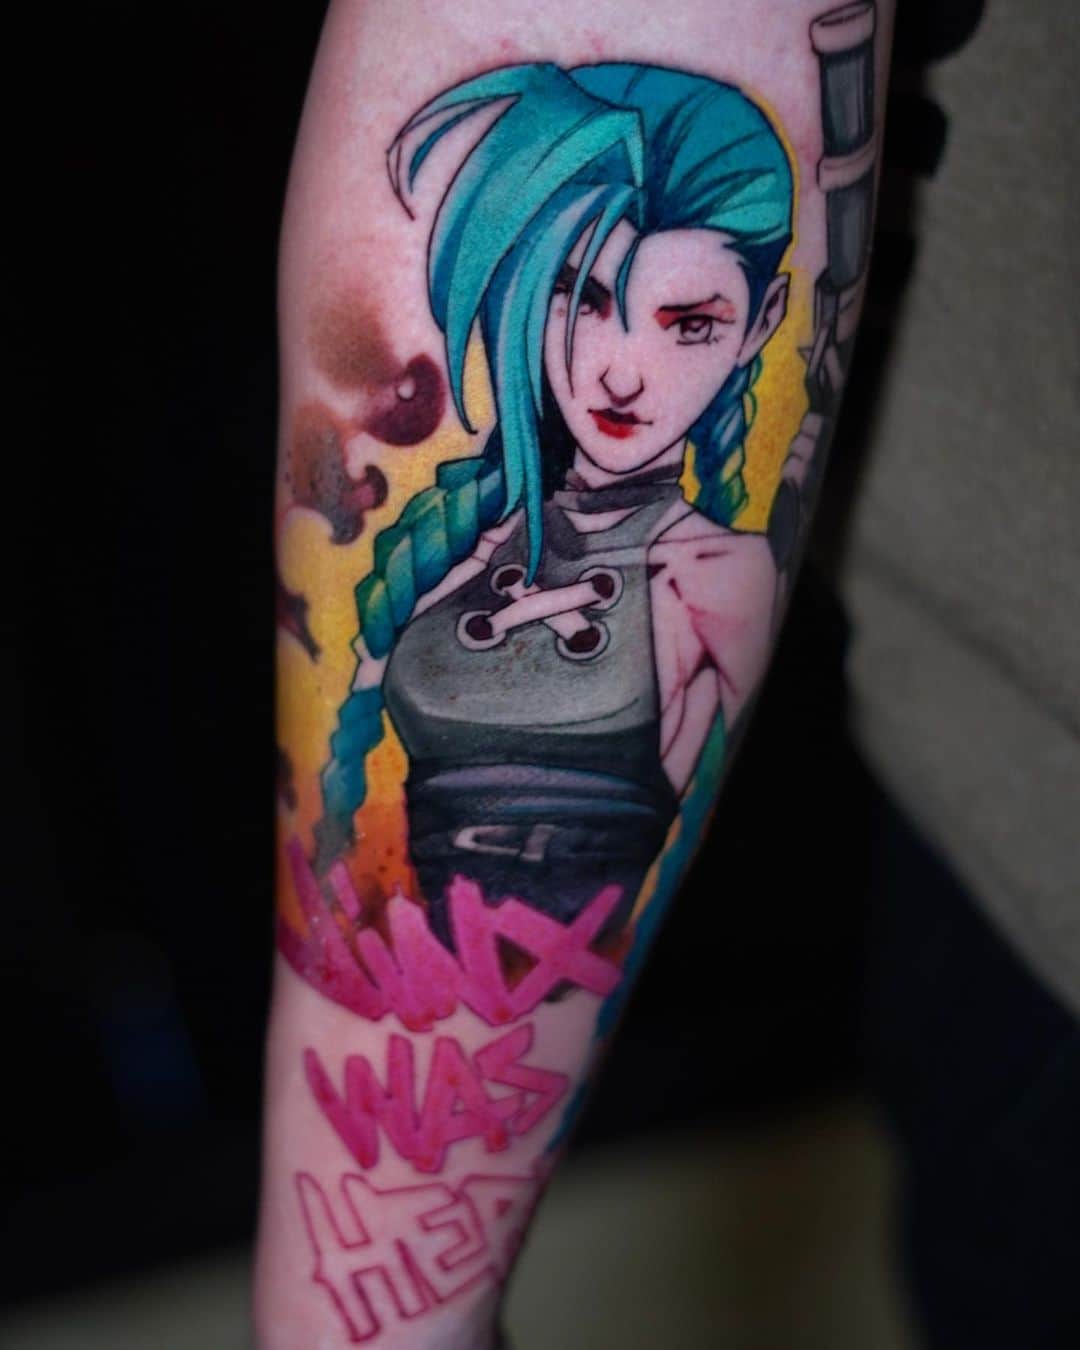 Kleur anime tattoo van een vrouw met blauw haar en een geweer en grafitti